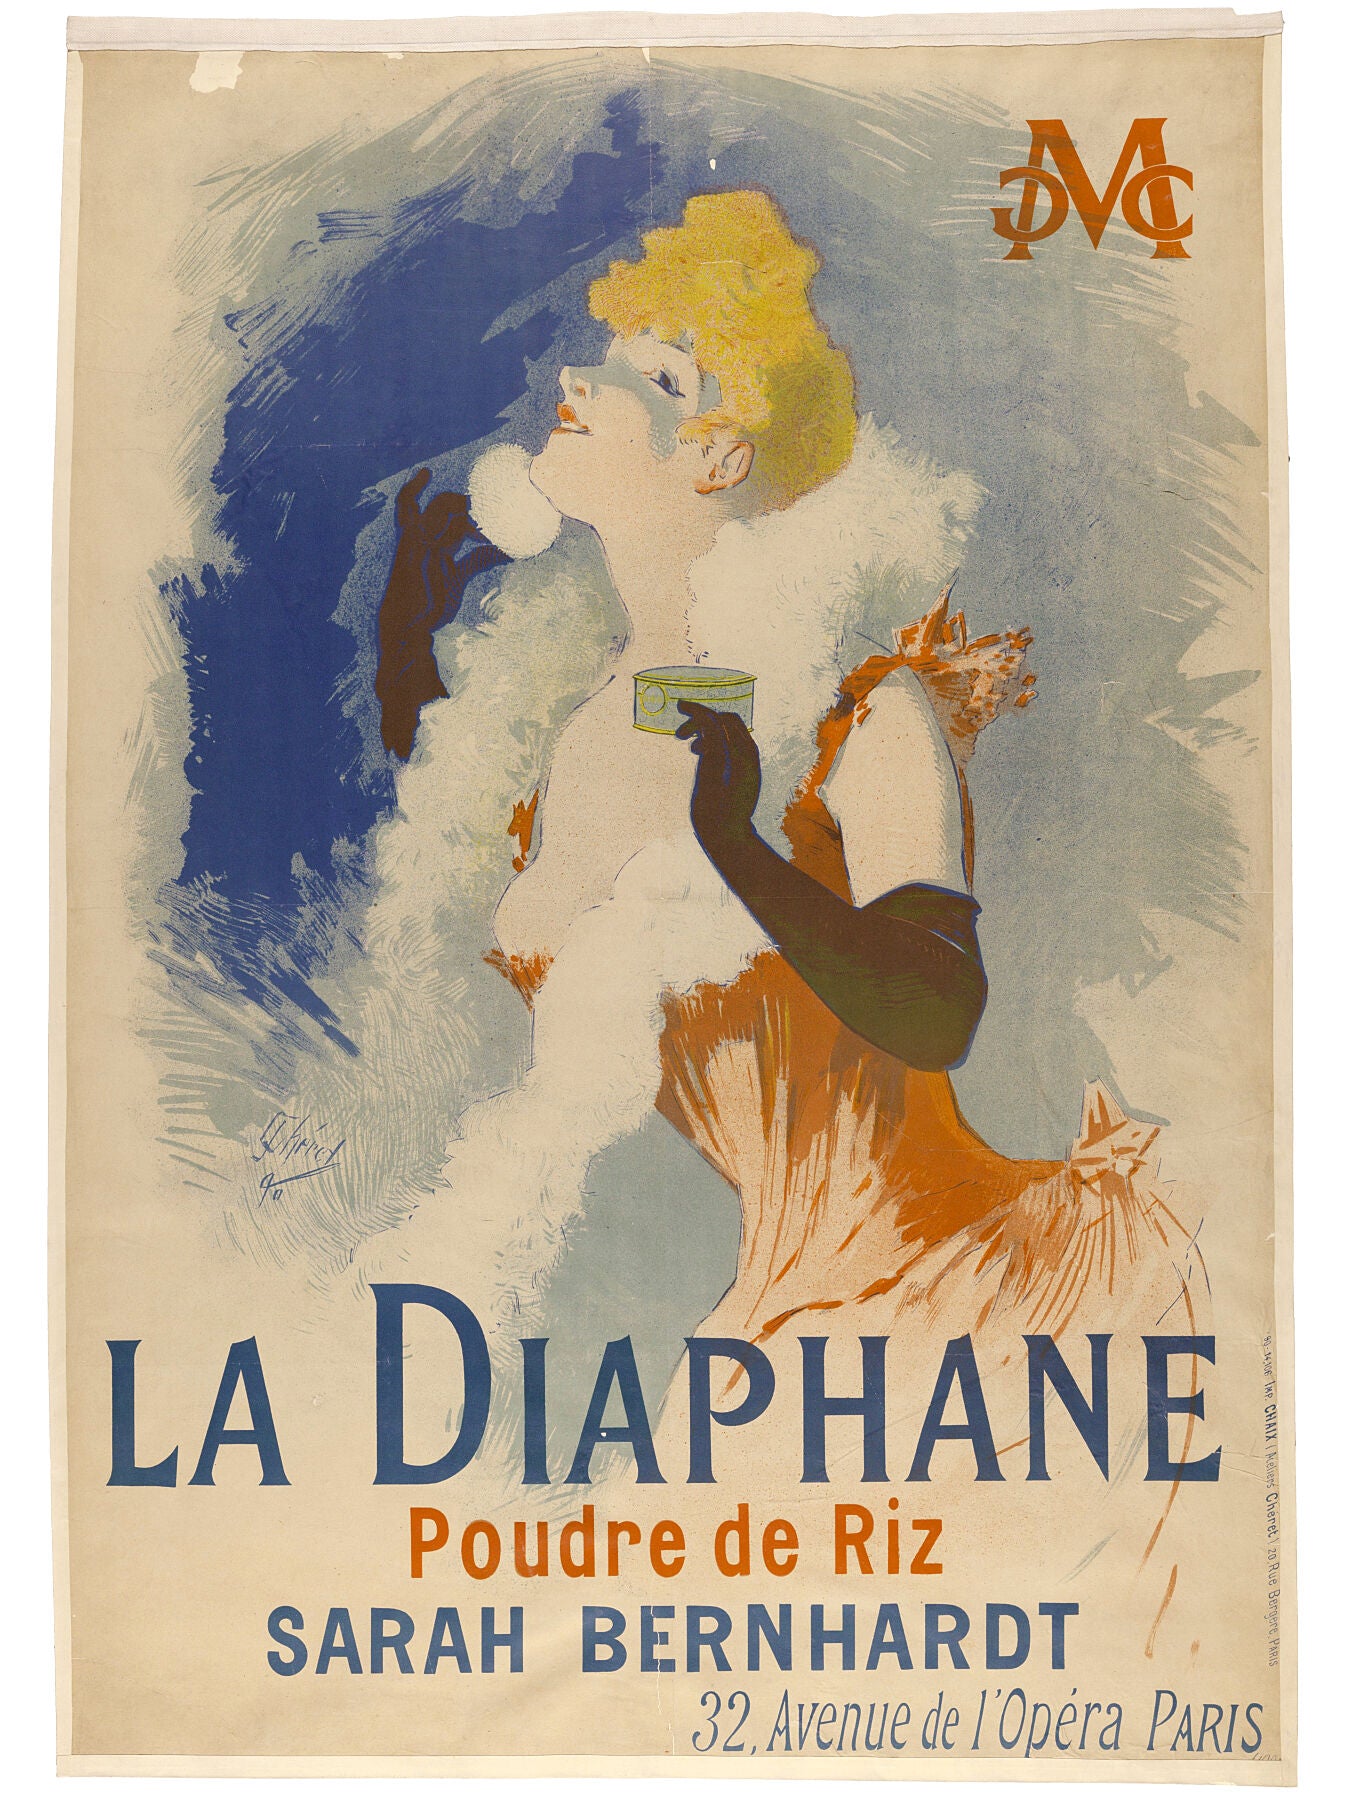 La Diaphane, Poudre de Riz by Jules Chéret - 1890